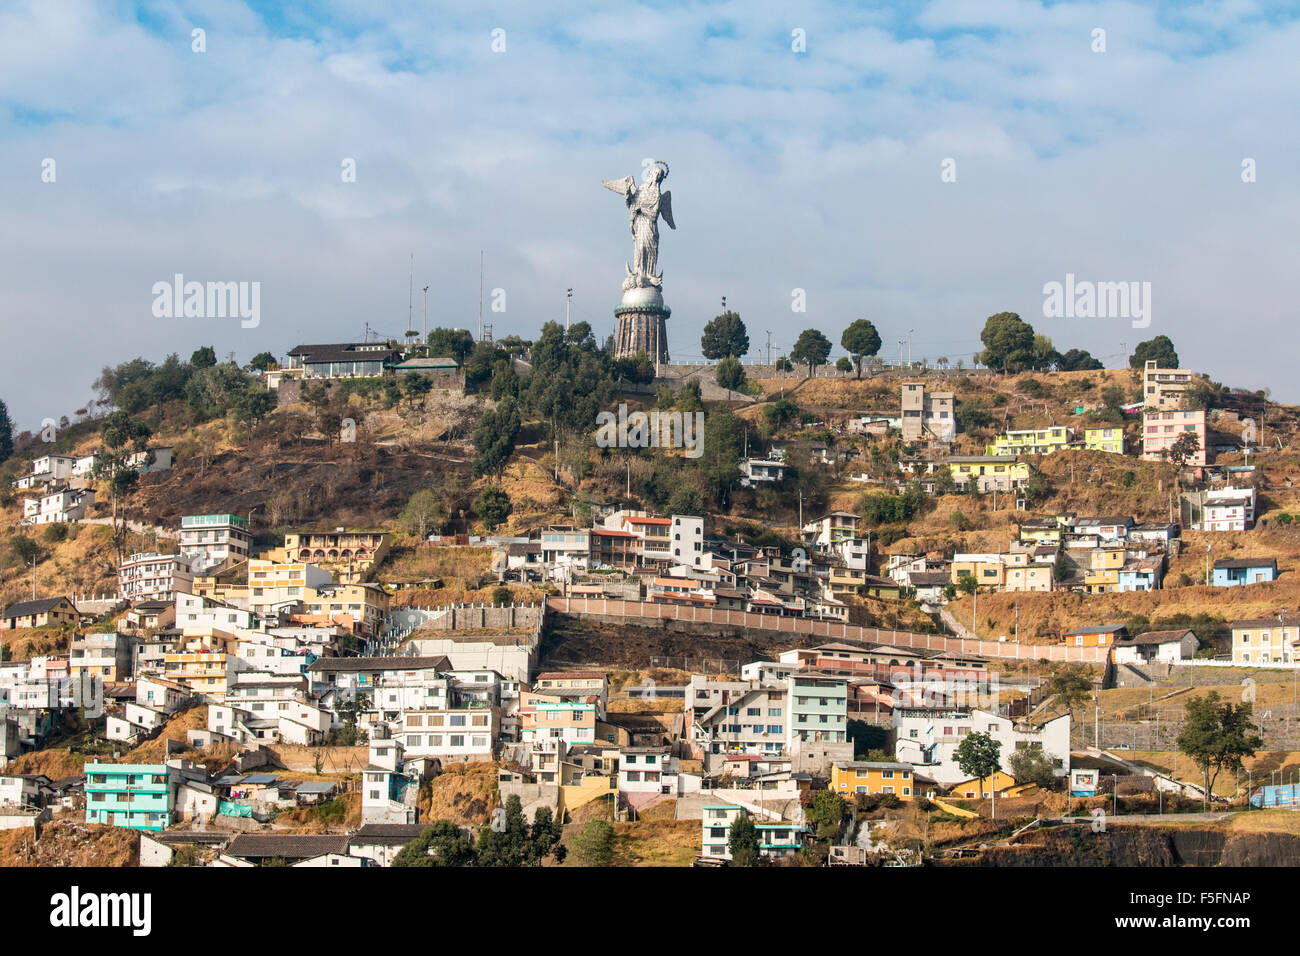 Situato sulla parte superiore del Cerro El Panecillo, la Virgen de Quito scultura può essere visto da qualsiasi posizione nel centro cittadino di Quito. Foto Stock